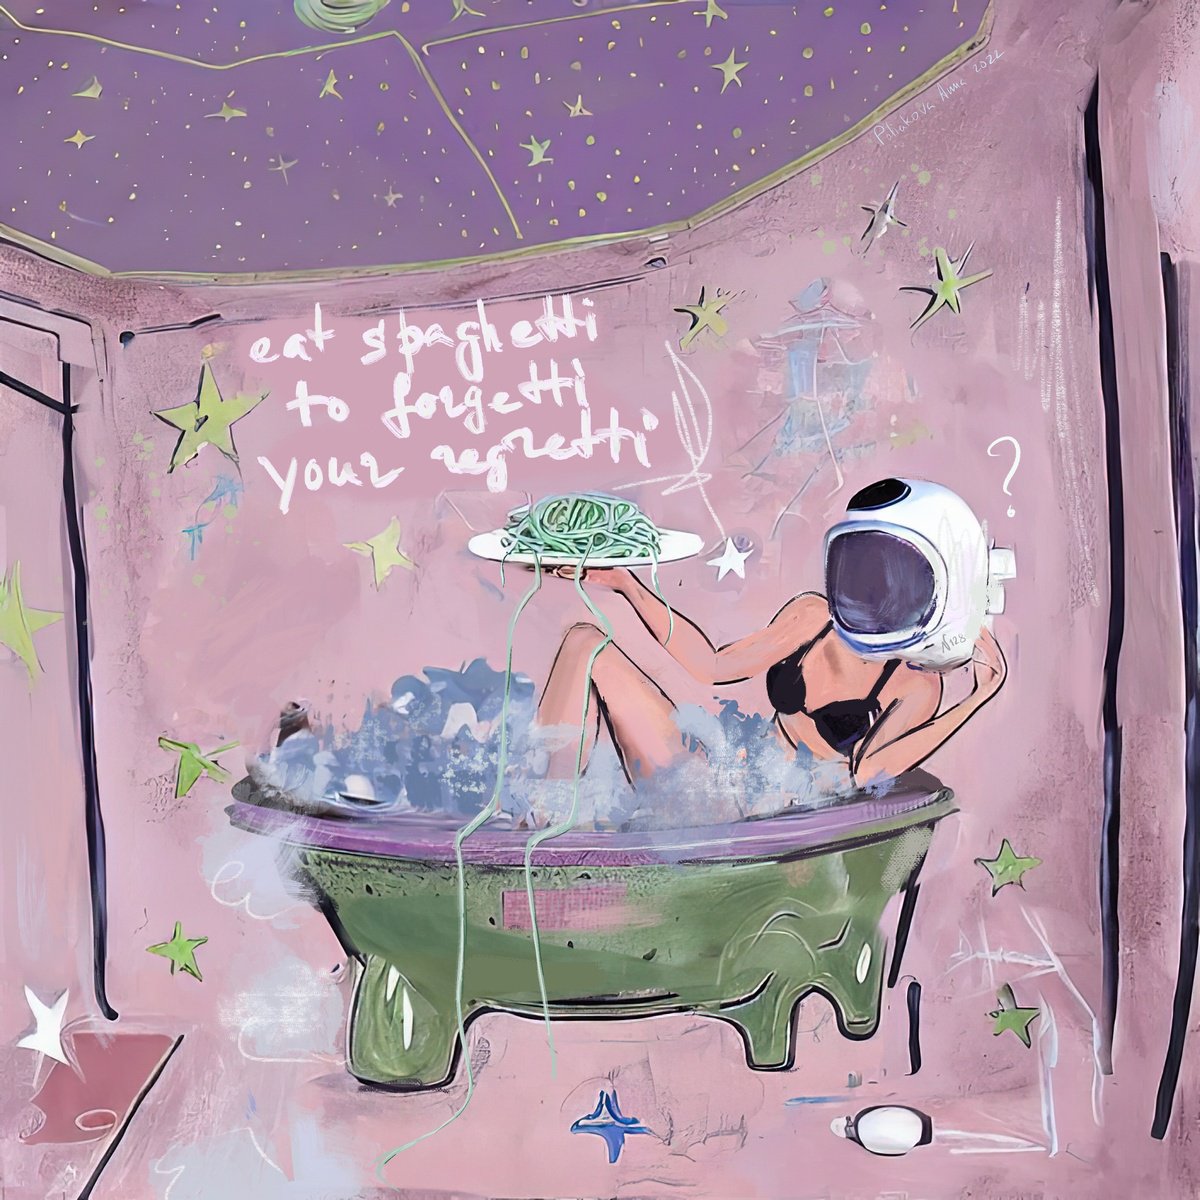 Eat spaghetti to forgetti your regretti - astronaut in bath by Anna Polani